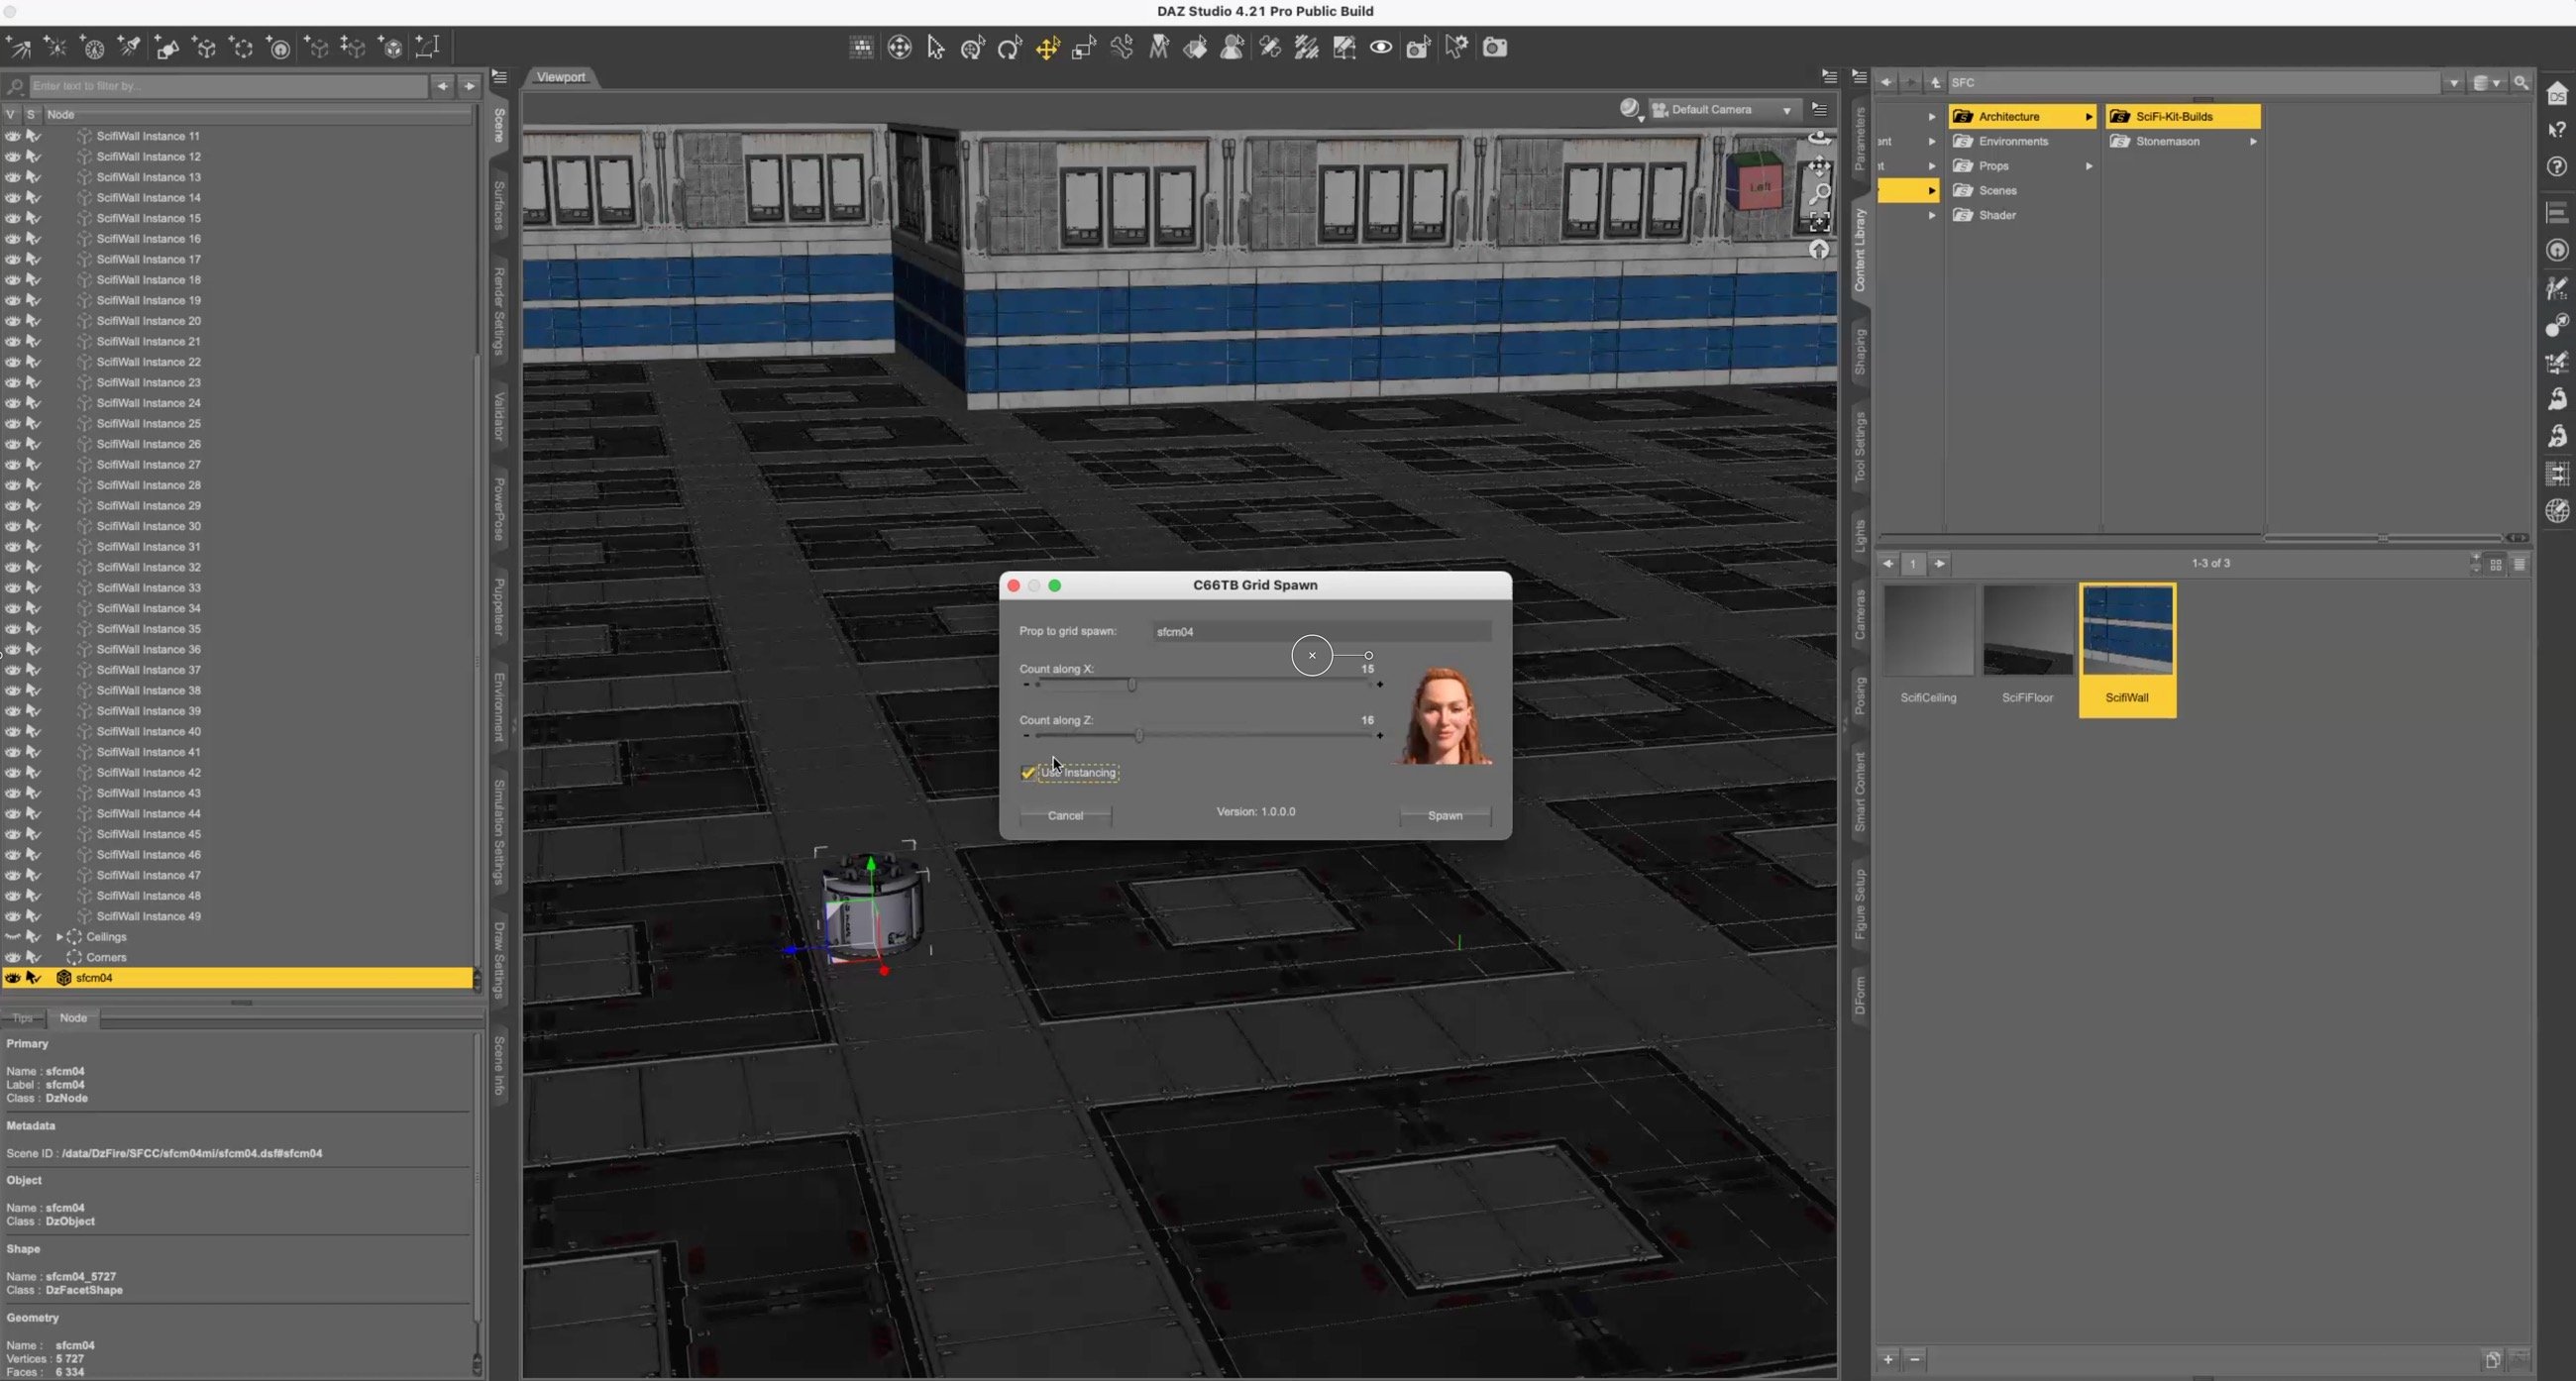 Toolbox Treasures : Super Scripts for DAZ Studio by: Digital Art LiveCode 66, 3D Models by Daz 3D